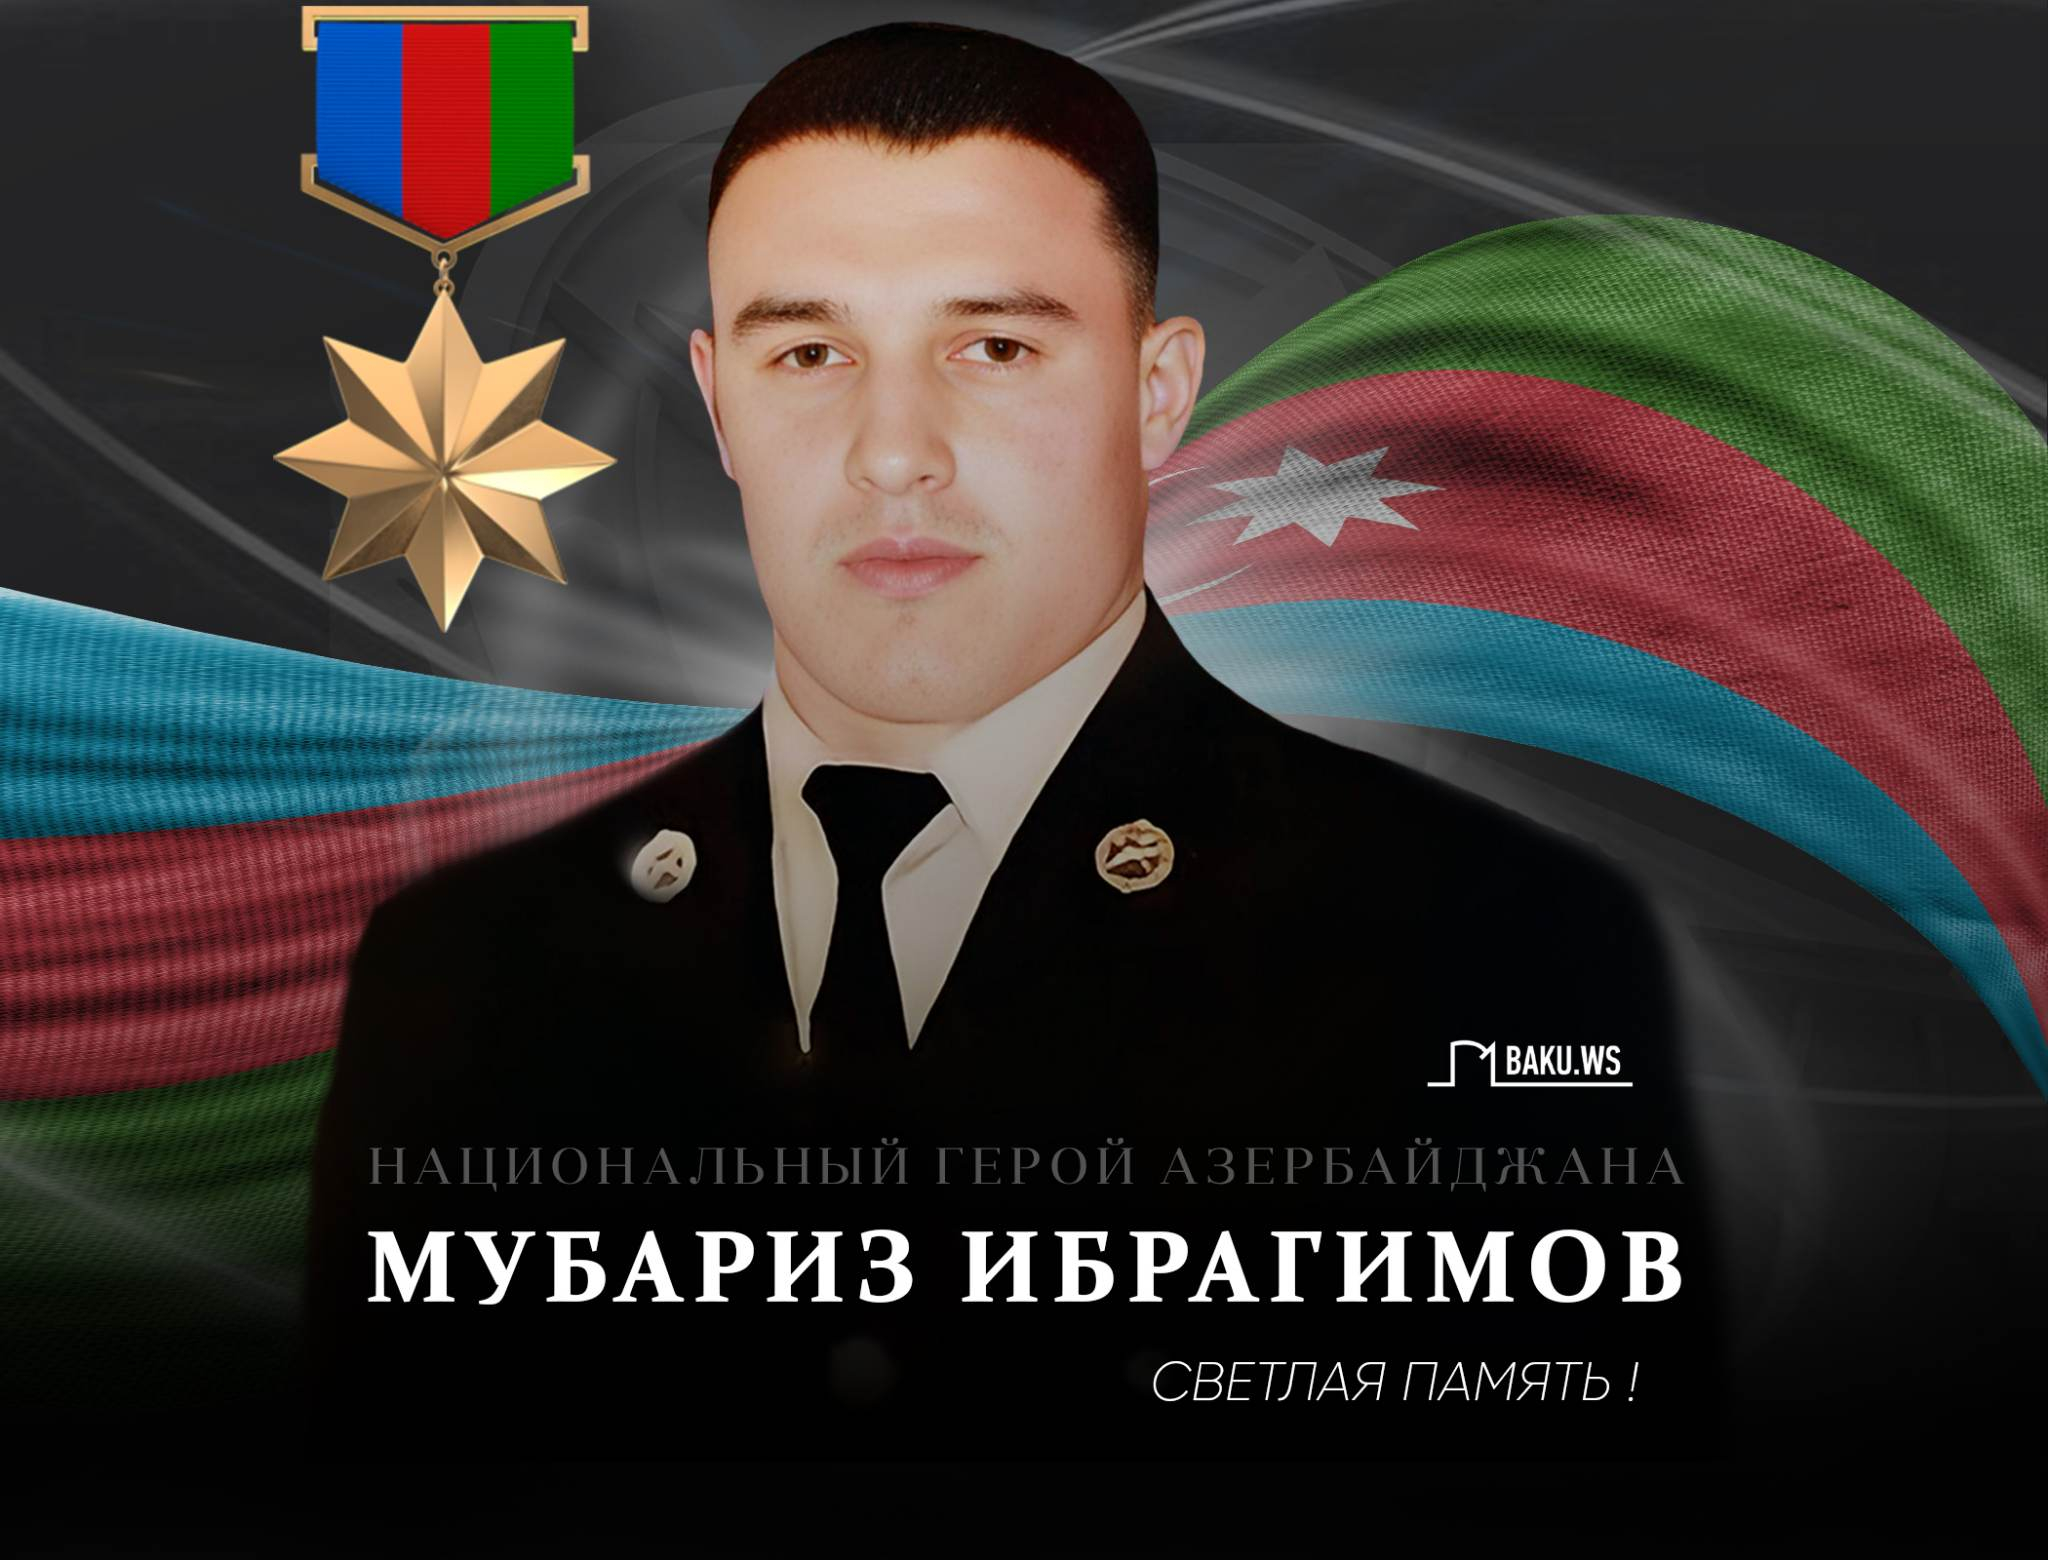 Сегодня день рождения Мубариза Ибрагимова